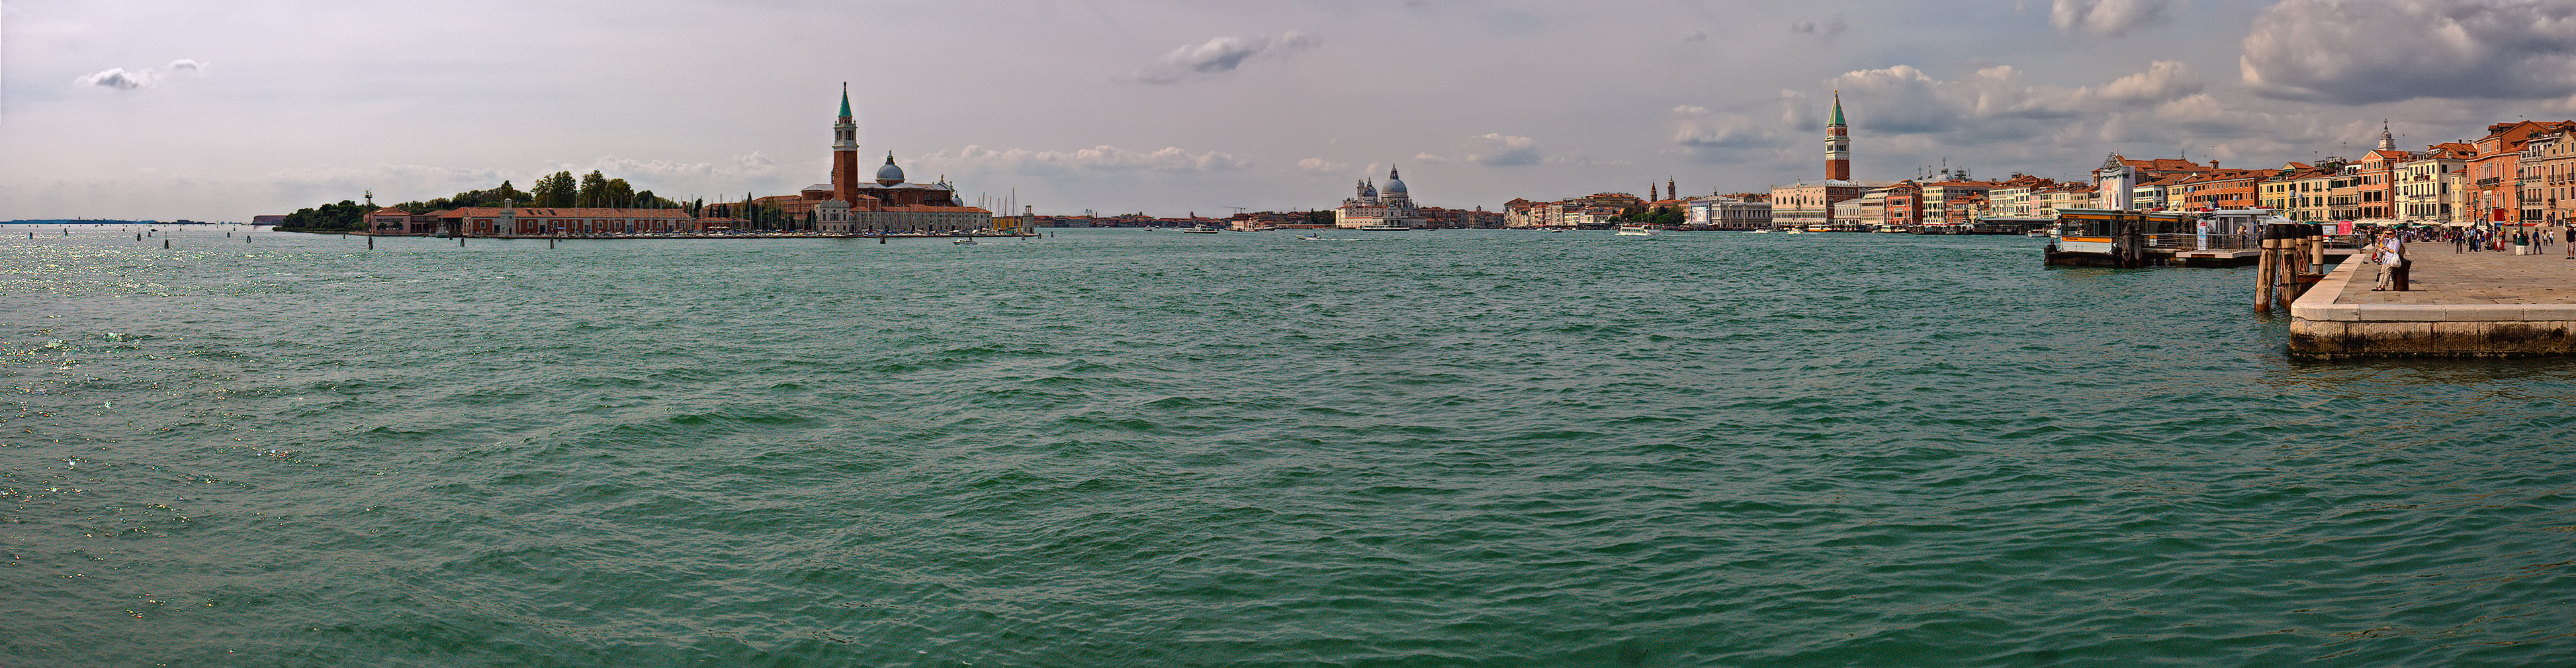 Венеция. Панорама бухты Сан-Марко.